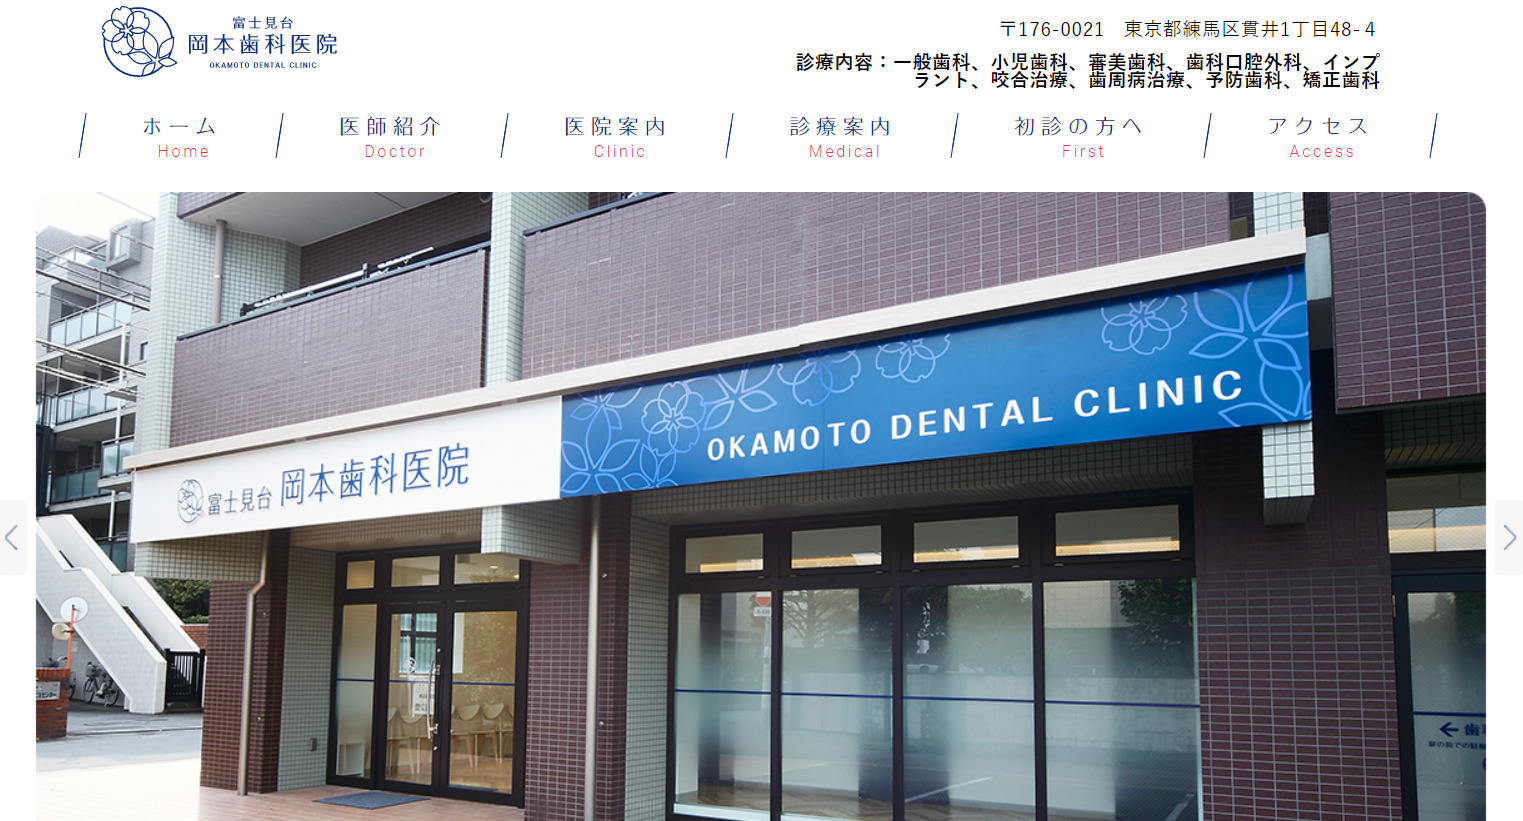 富士見台岡本歯科医院の画像